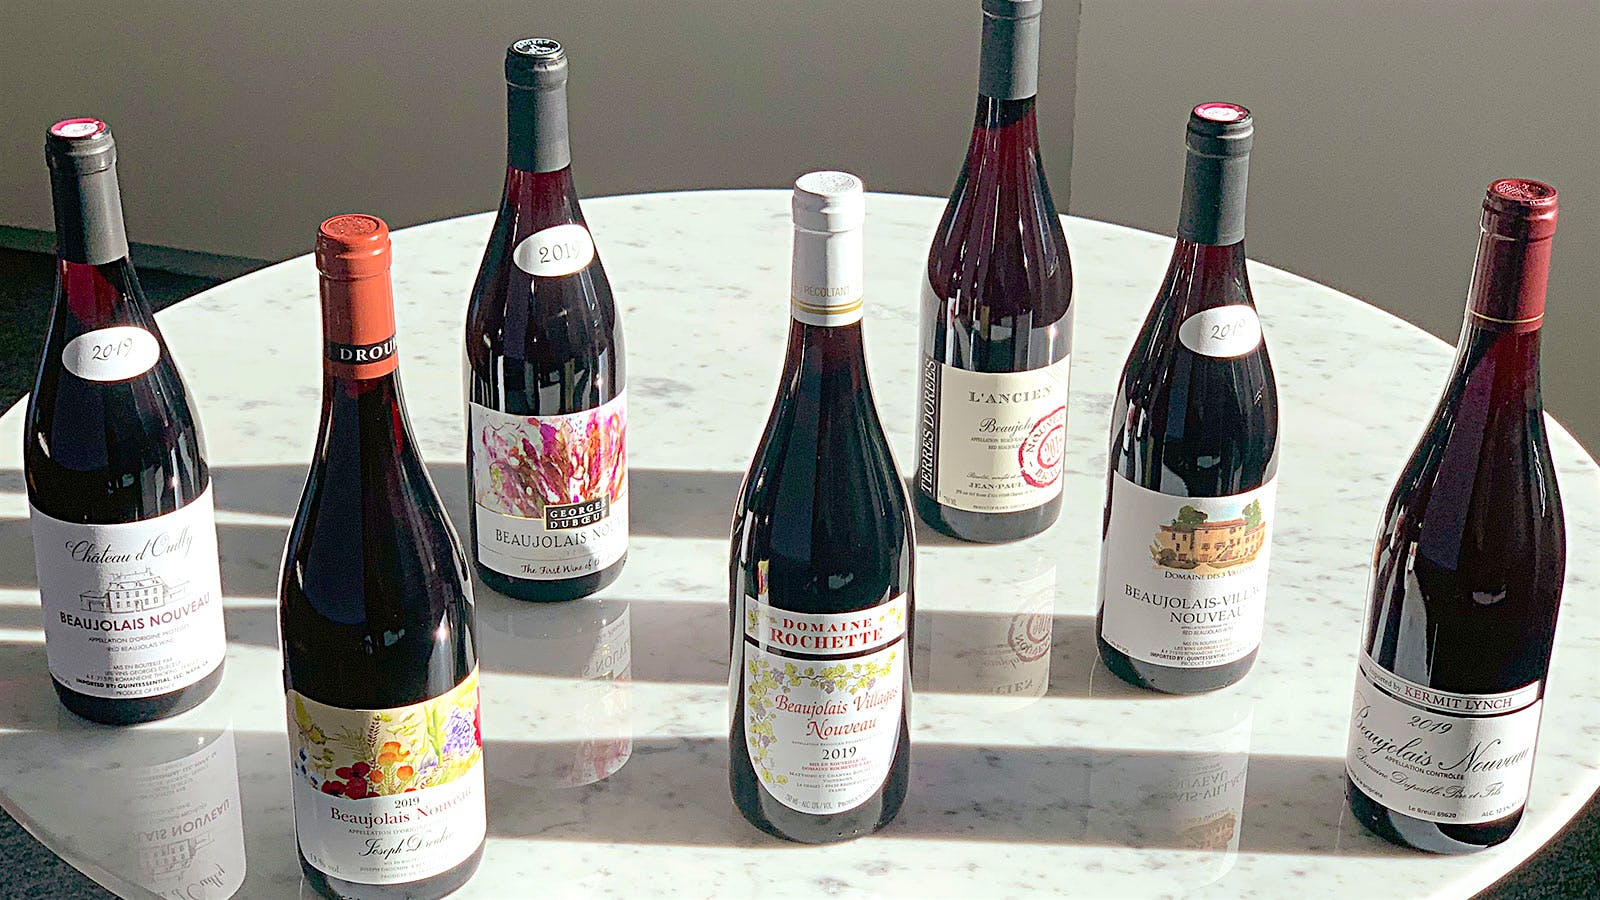 2019 Beaujolais Nouveau bottles